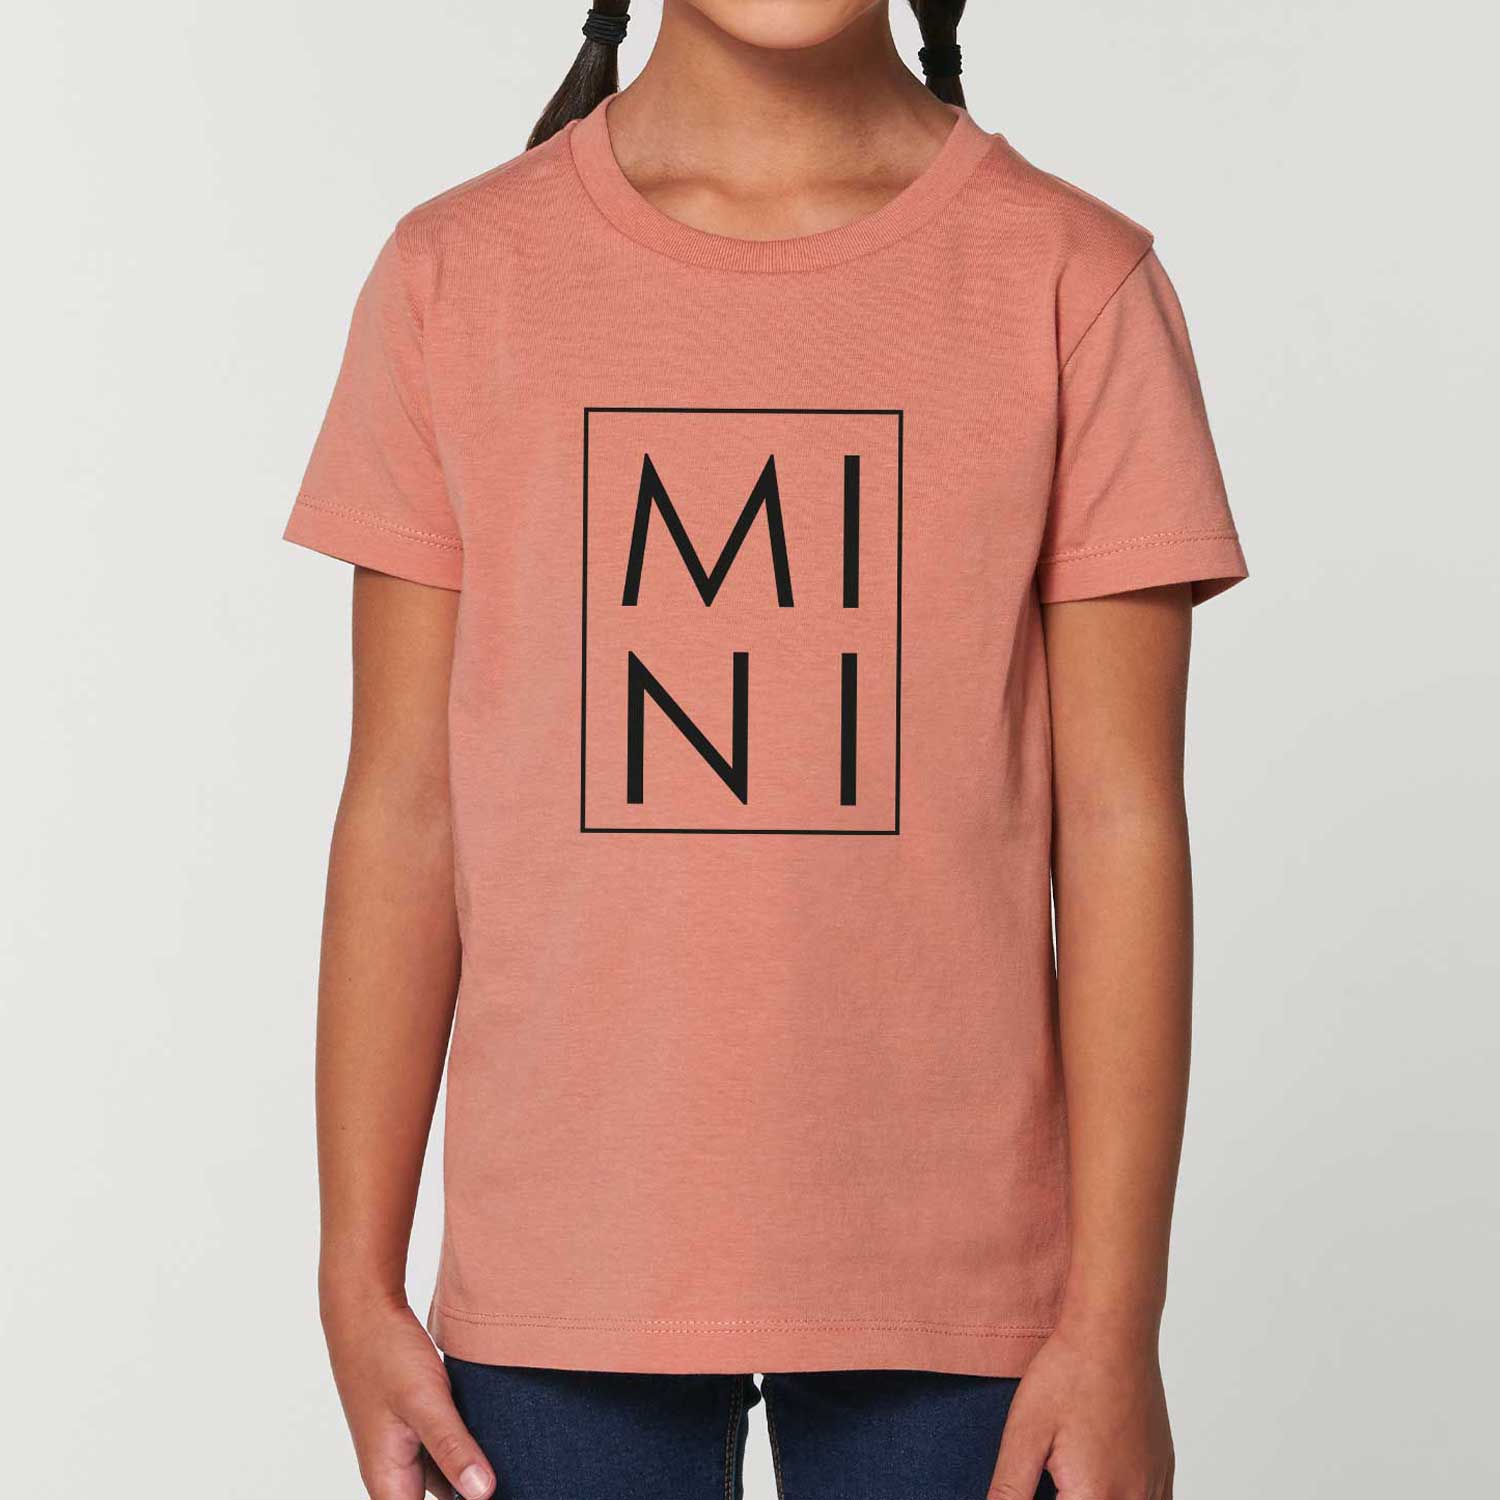 Kids T-Shirt - MINI